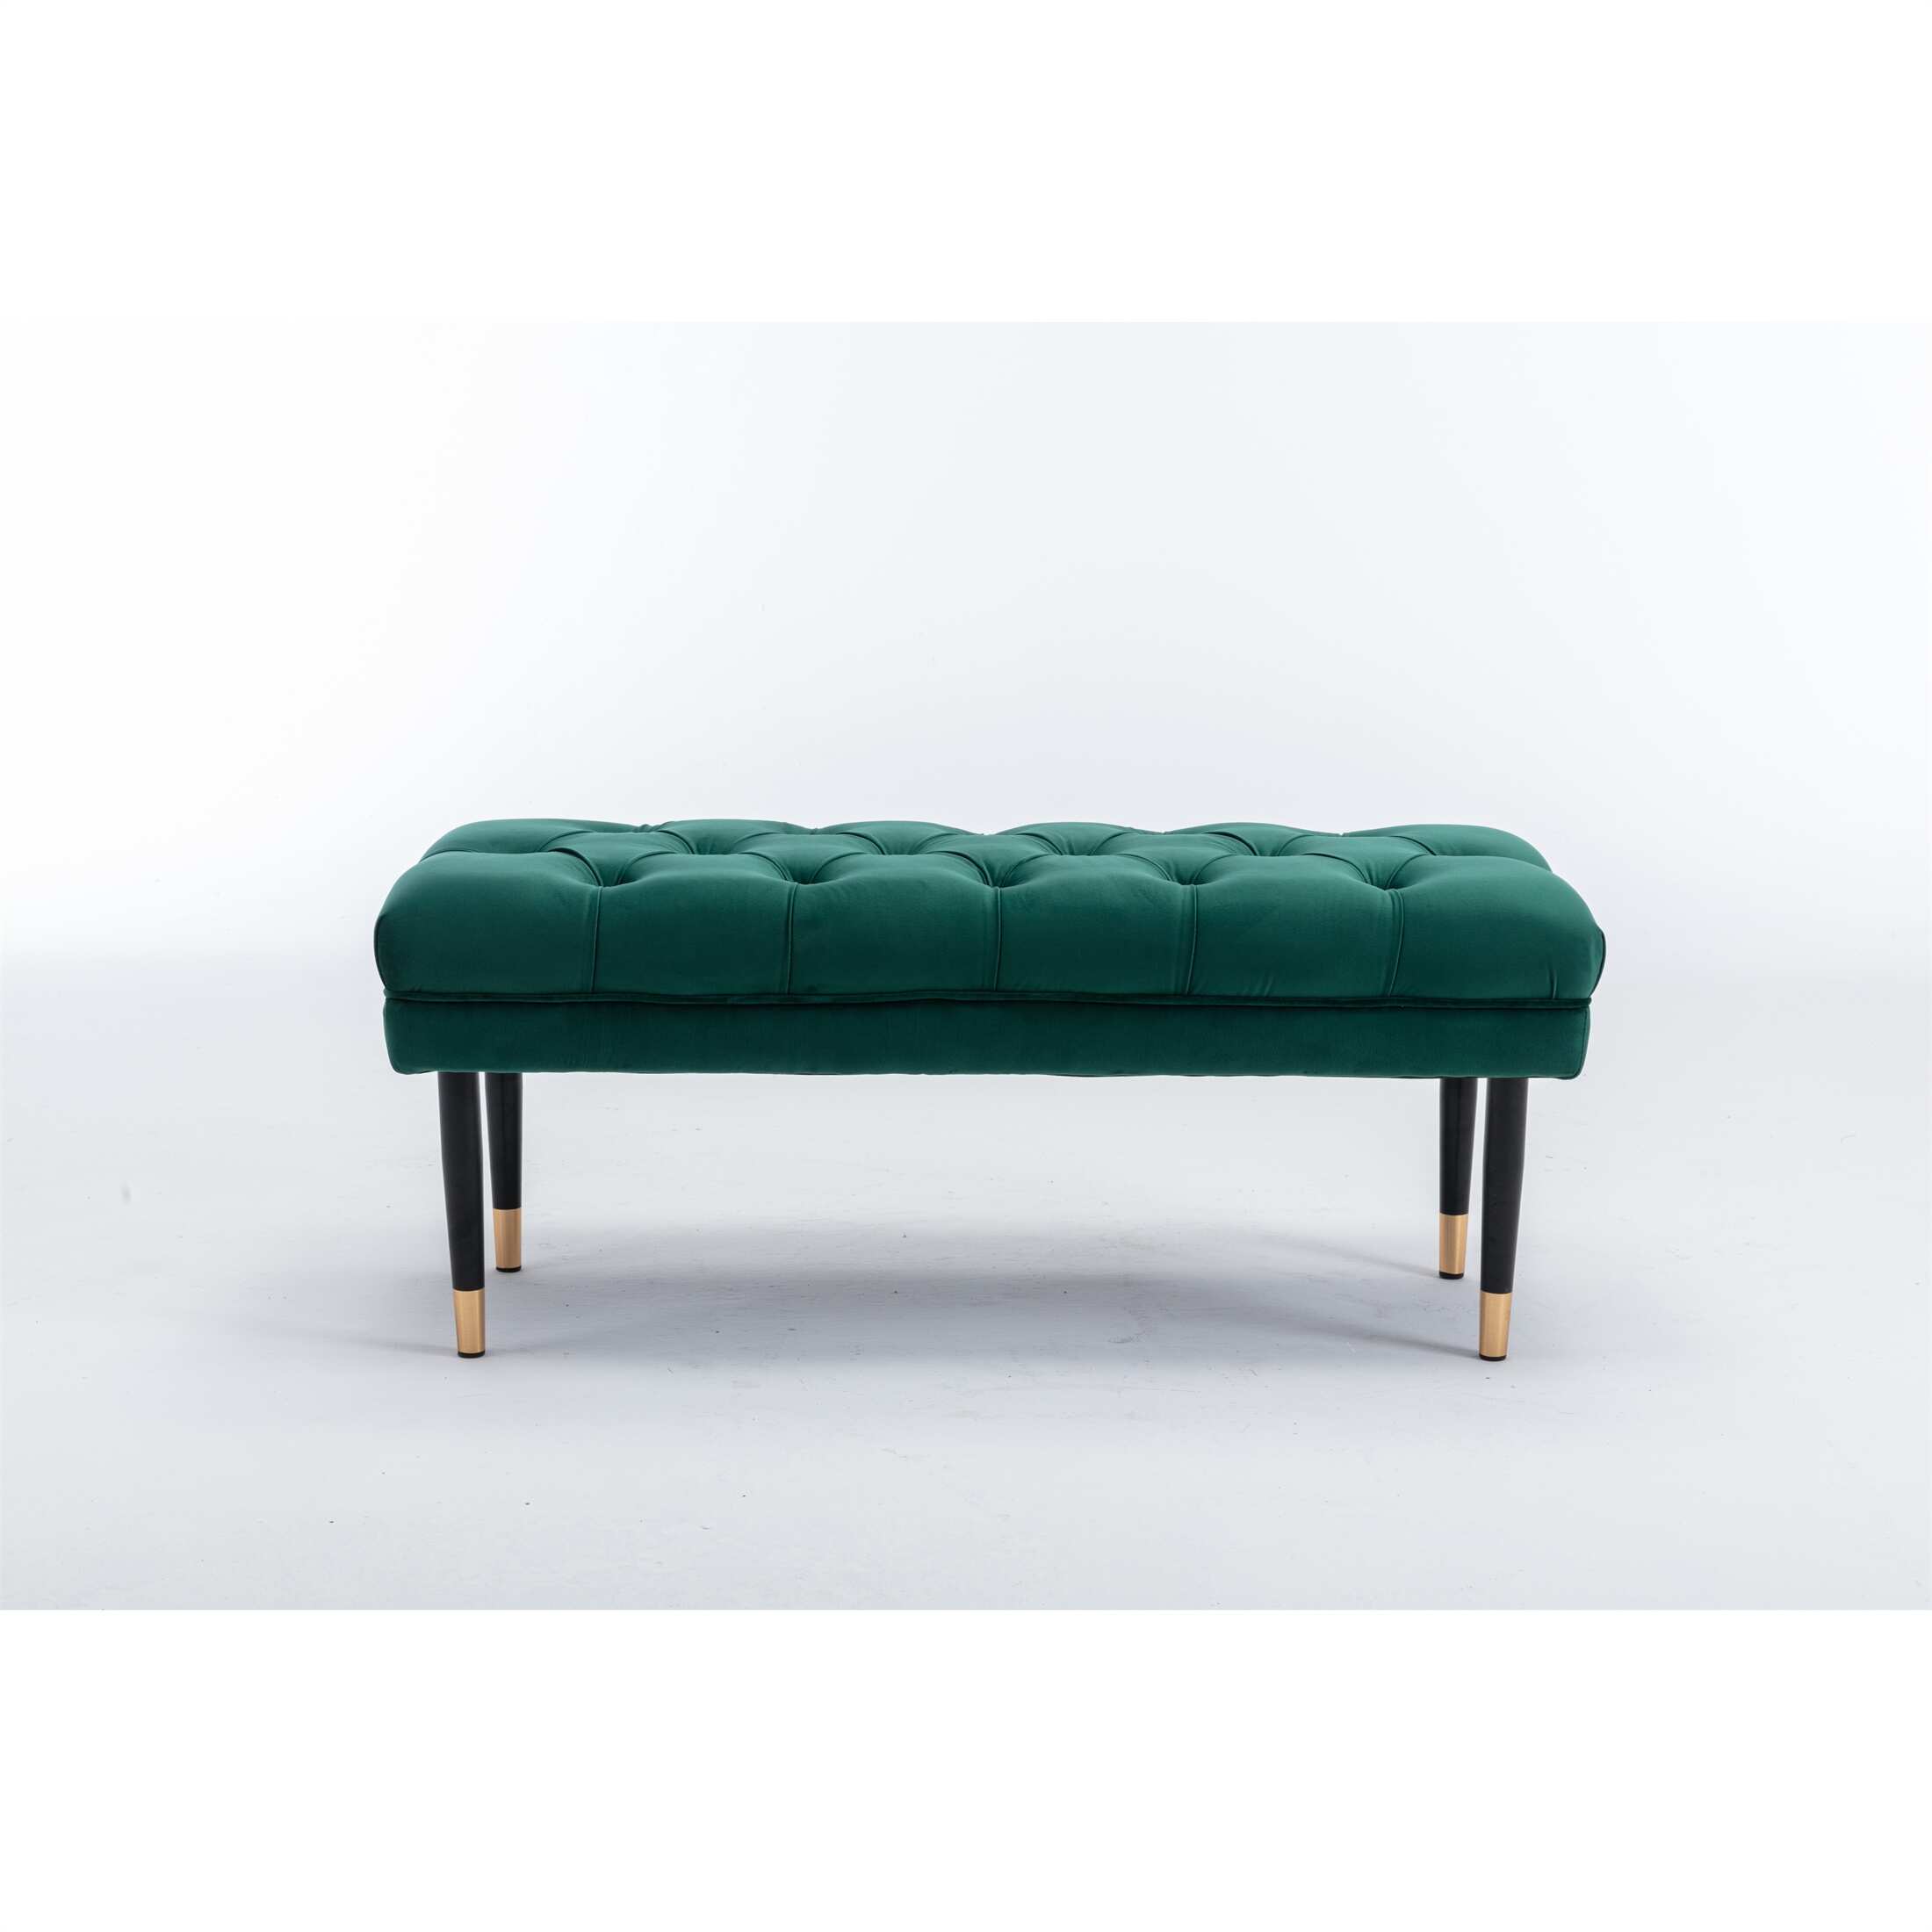 Green Tufted Velvet Upholstered Ottoman Benches Footstool Metal Legs